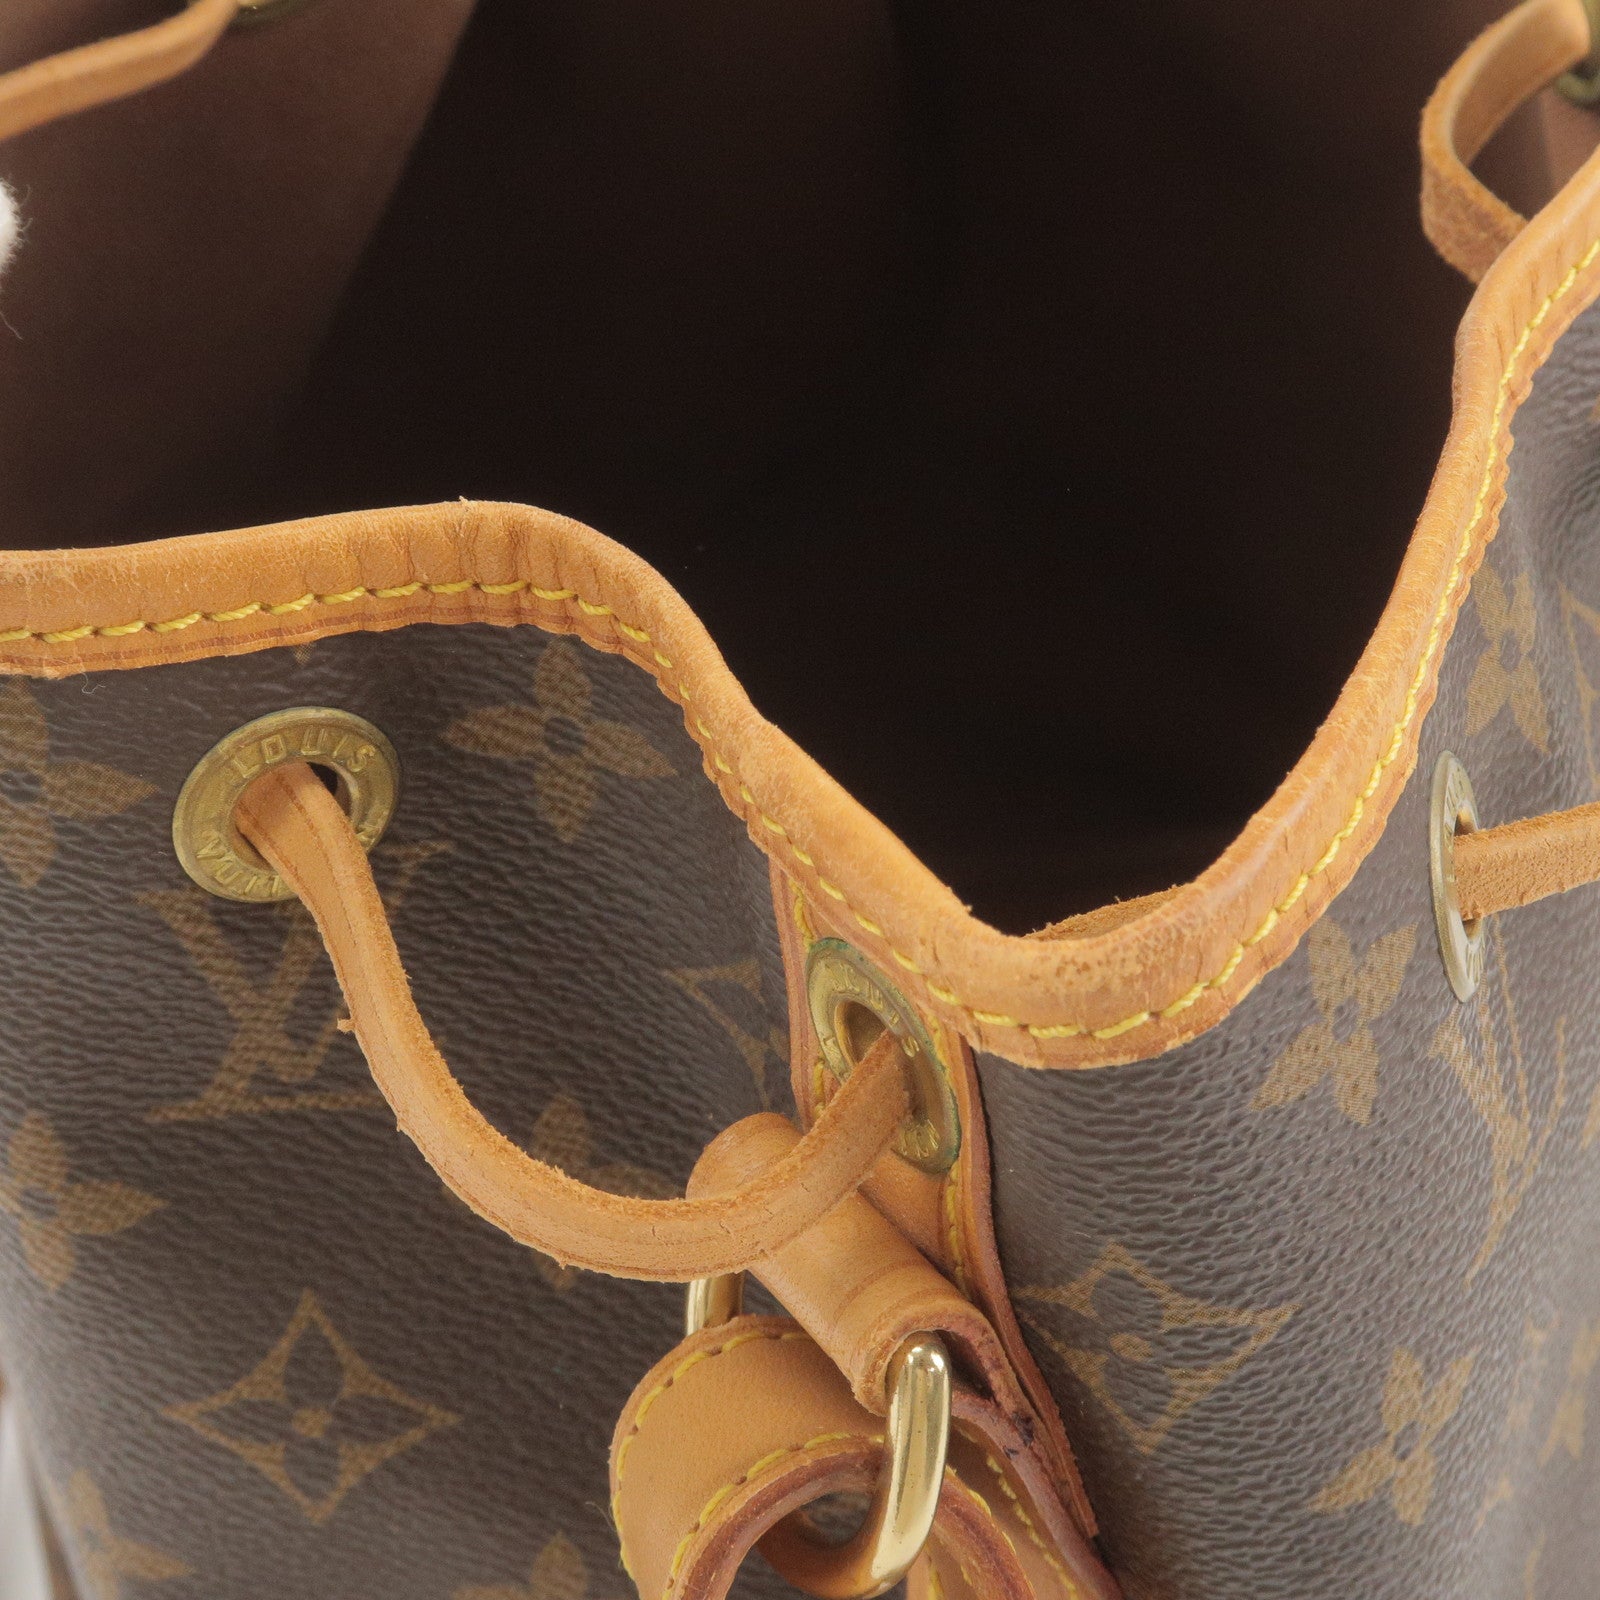 On Loafers in Black Leather - Petit - Bag - Monogram - Vuitton - M42226 – Louis  Vuitton Saint Germain Slip - Shoulder - Noe - Louis Vuitton Nano BB - Louis